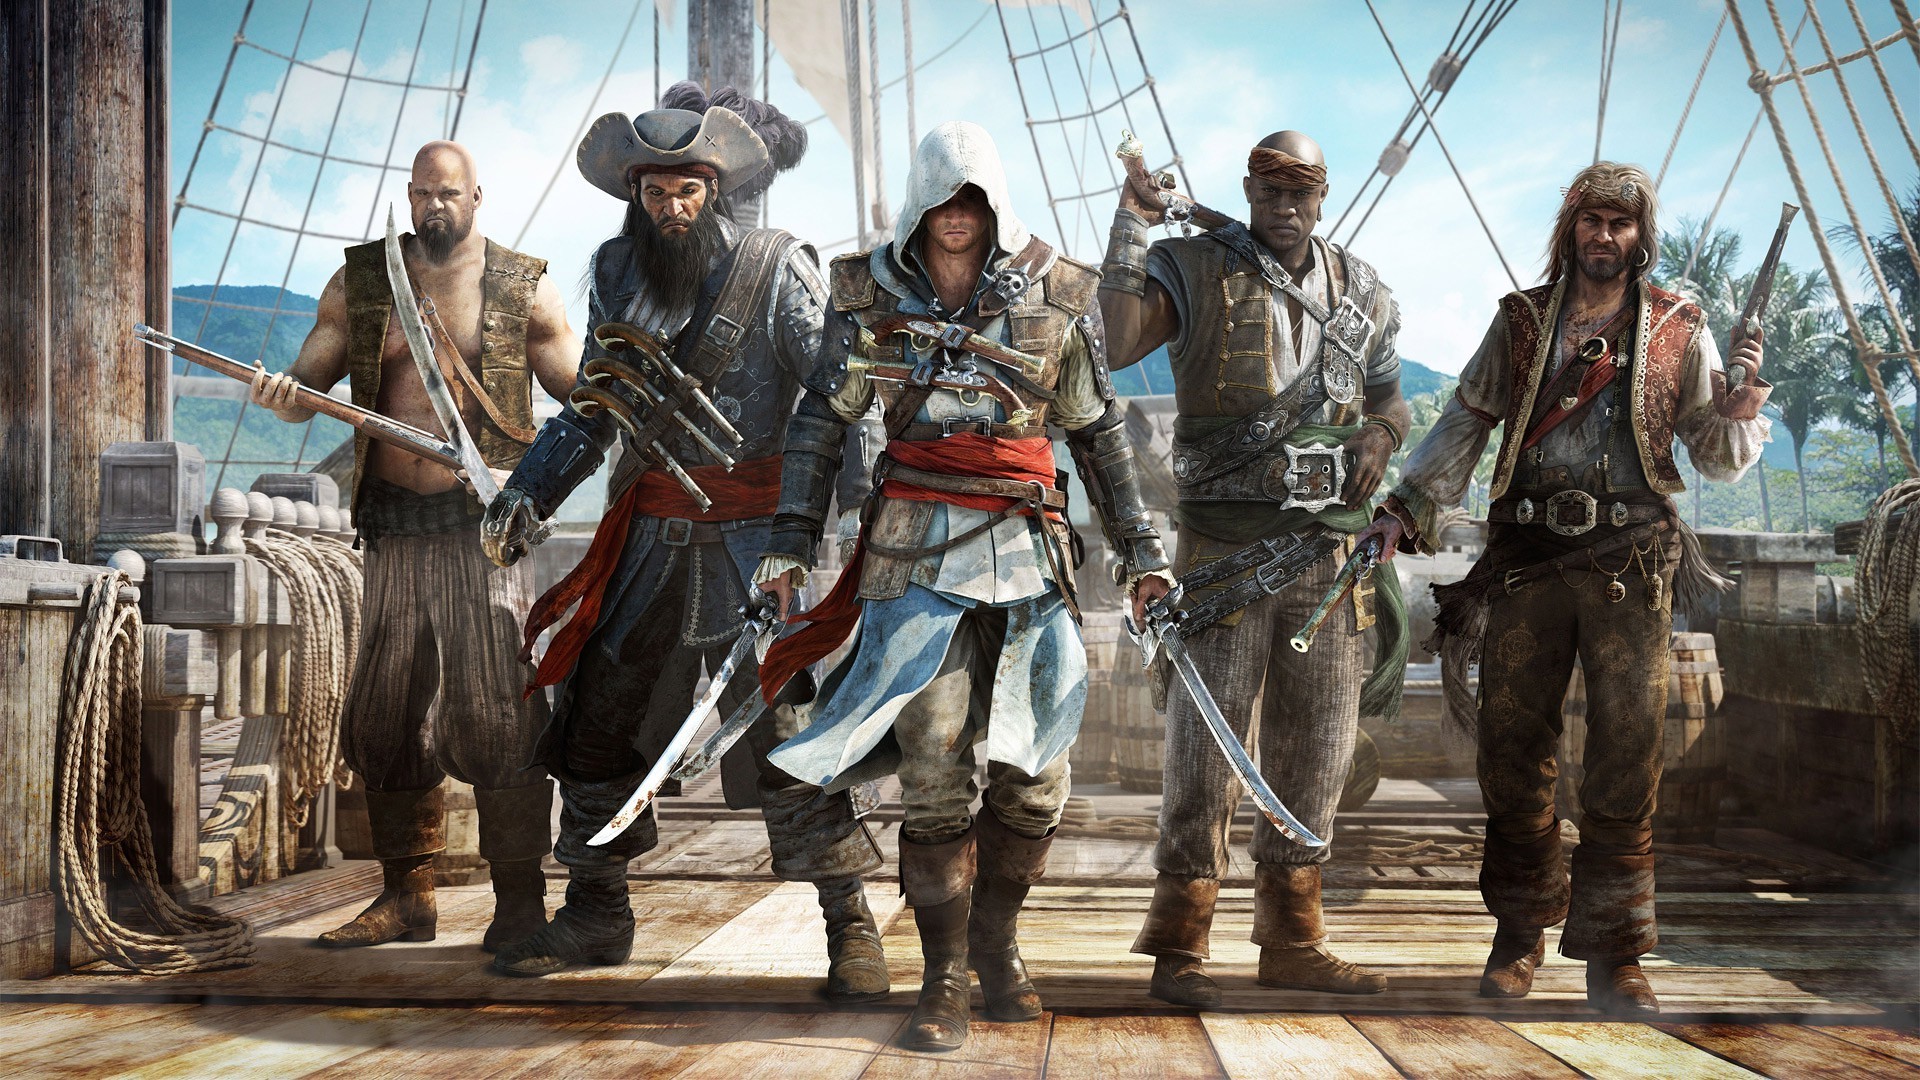 Assassin's Creed Black Flag Wallpaper for Desktop | PixelsTalk.Net